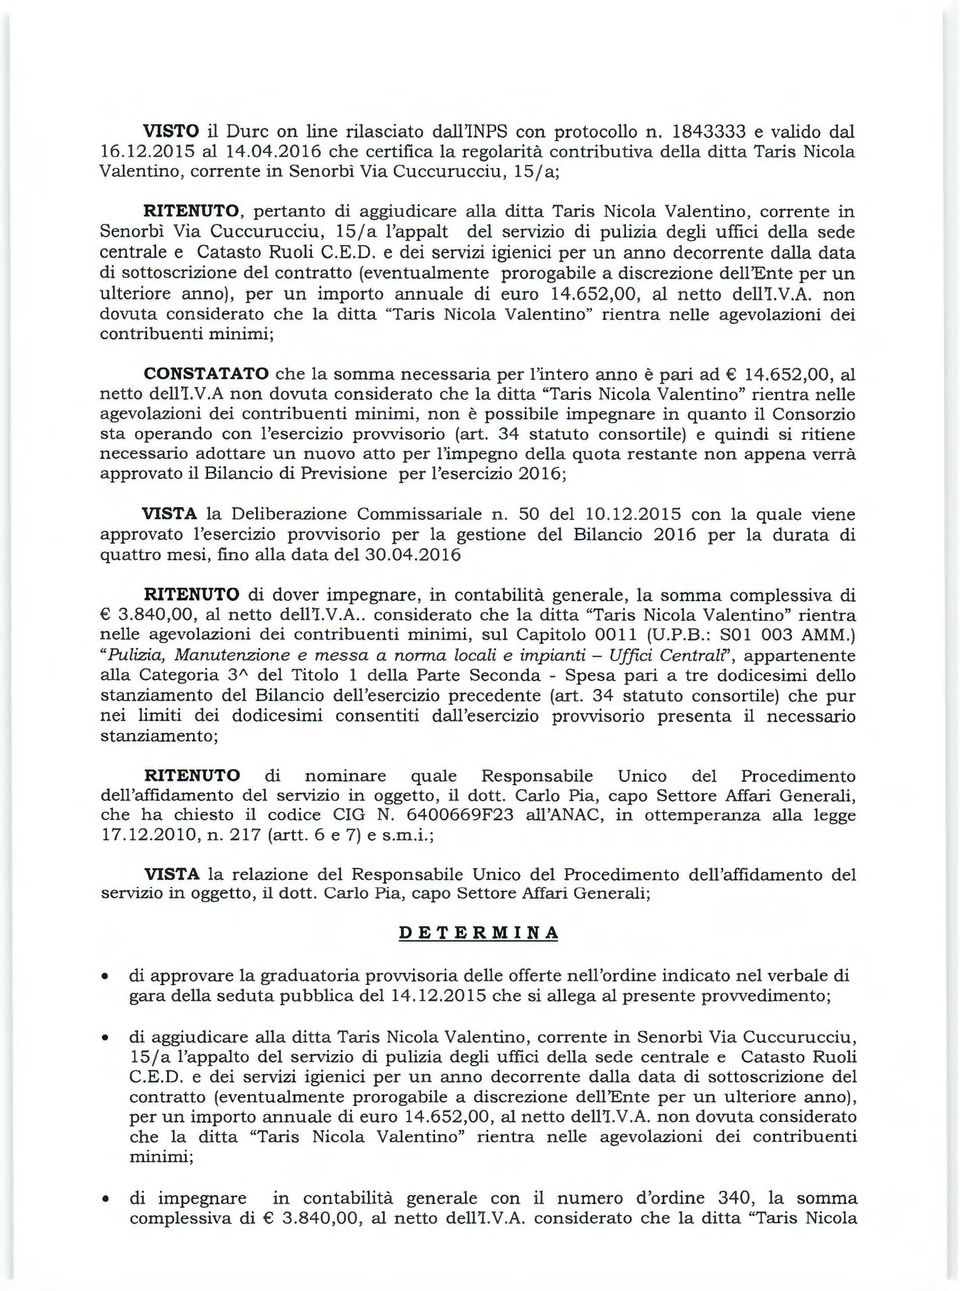 corrente in Senorbì Via Cuccurucciu, 15 /a l'appalt del servizio di pulizia degli uffici della sede centrale e Catasto Ruoli C.E.D.